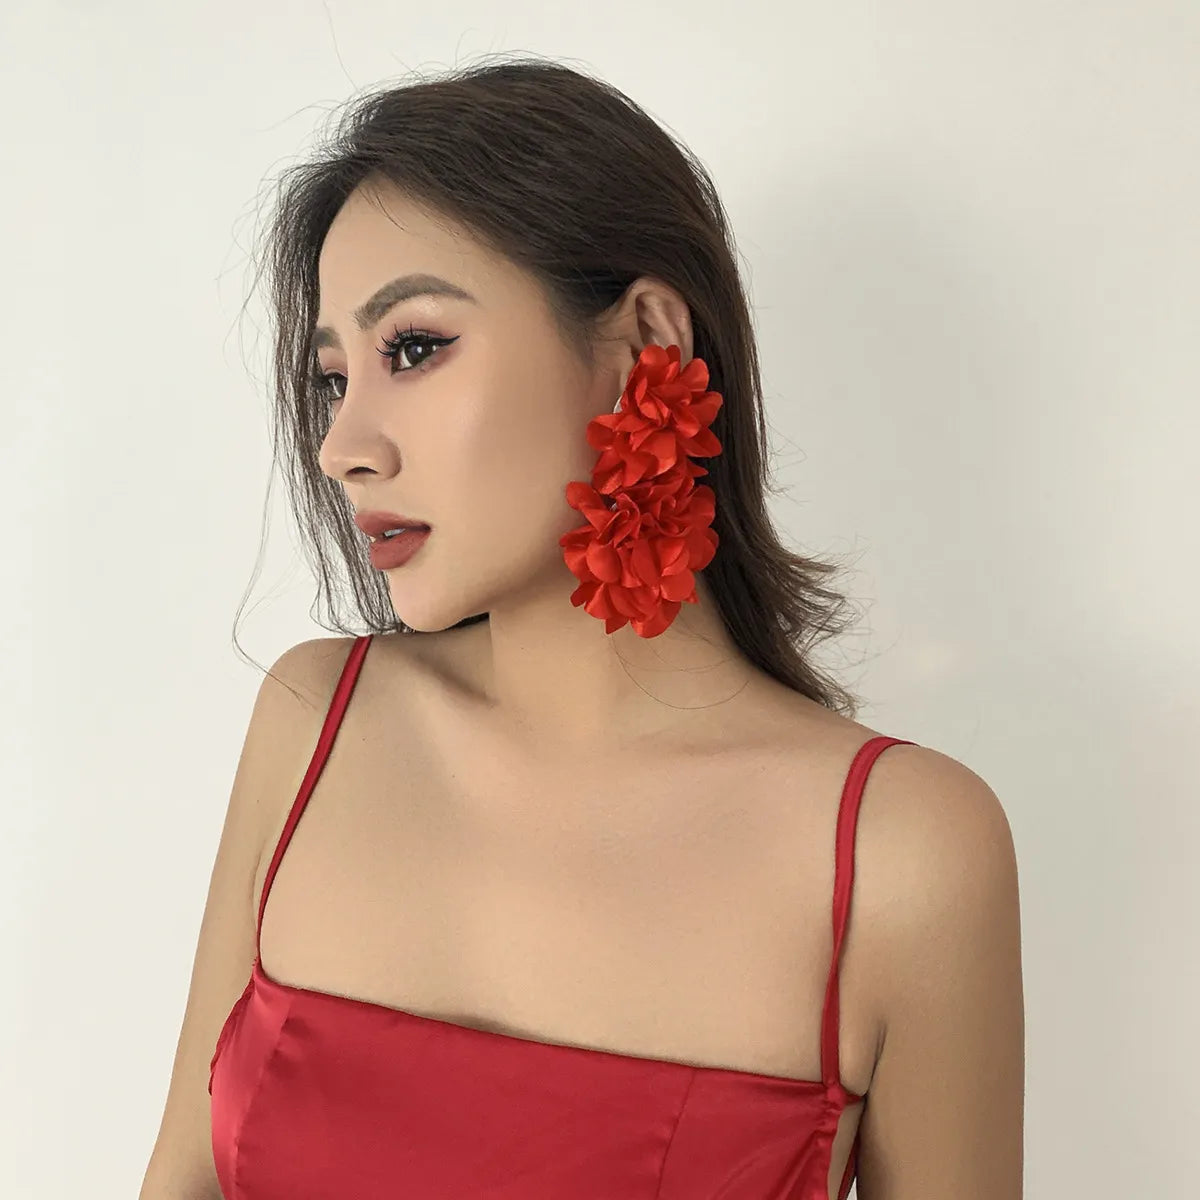 TEEK - Big Fab Flower Earrings JEWELRY theteekdotcom Red  